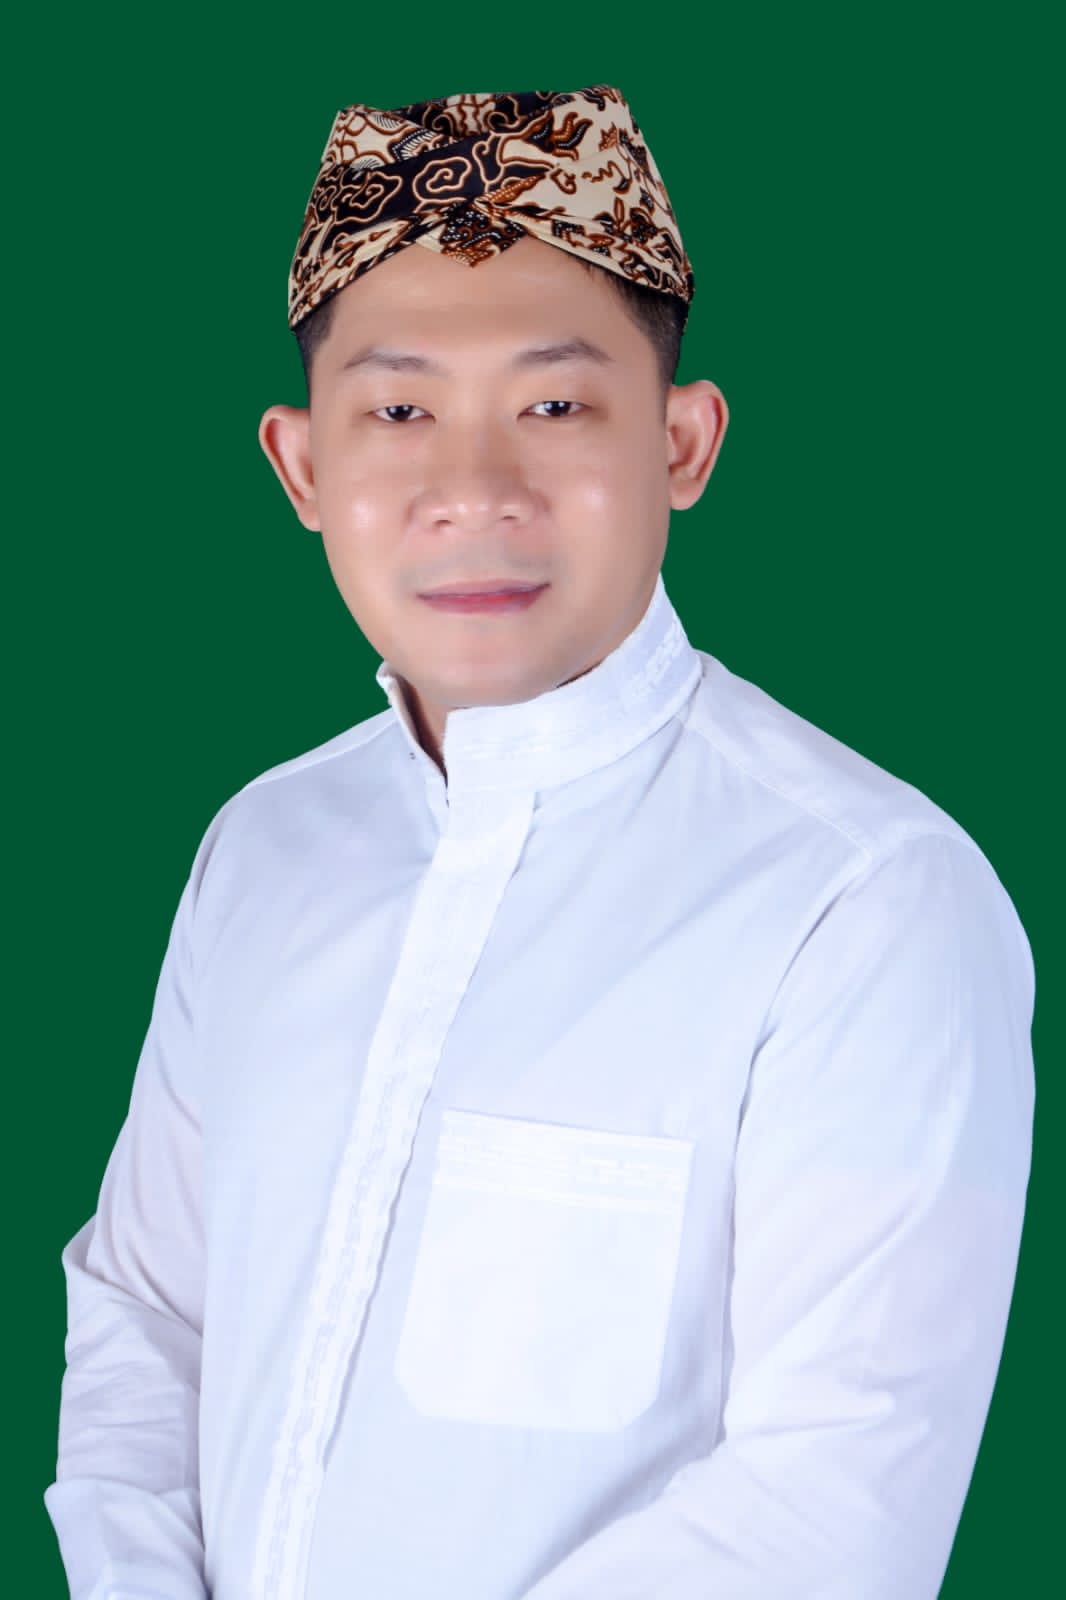 Kang Mas Dana ditetapkan sebagai Ketua Dewan Pembina ARM nasional yang merupakan tokoh muda putra asli Jawa Barat yang berasal dari Cirebon.